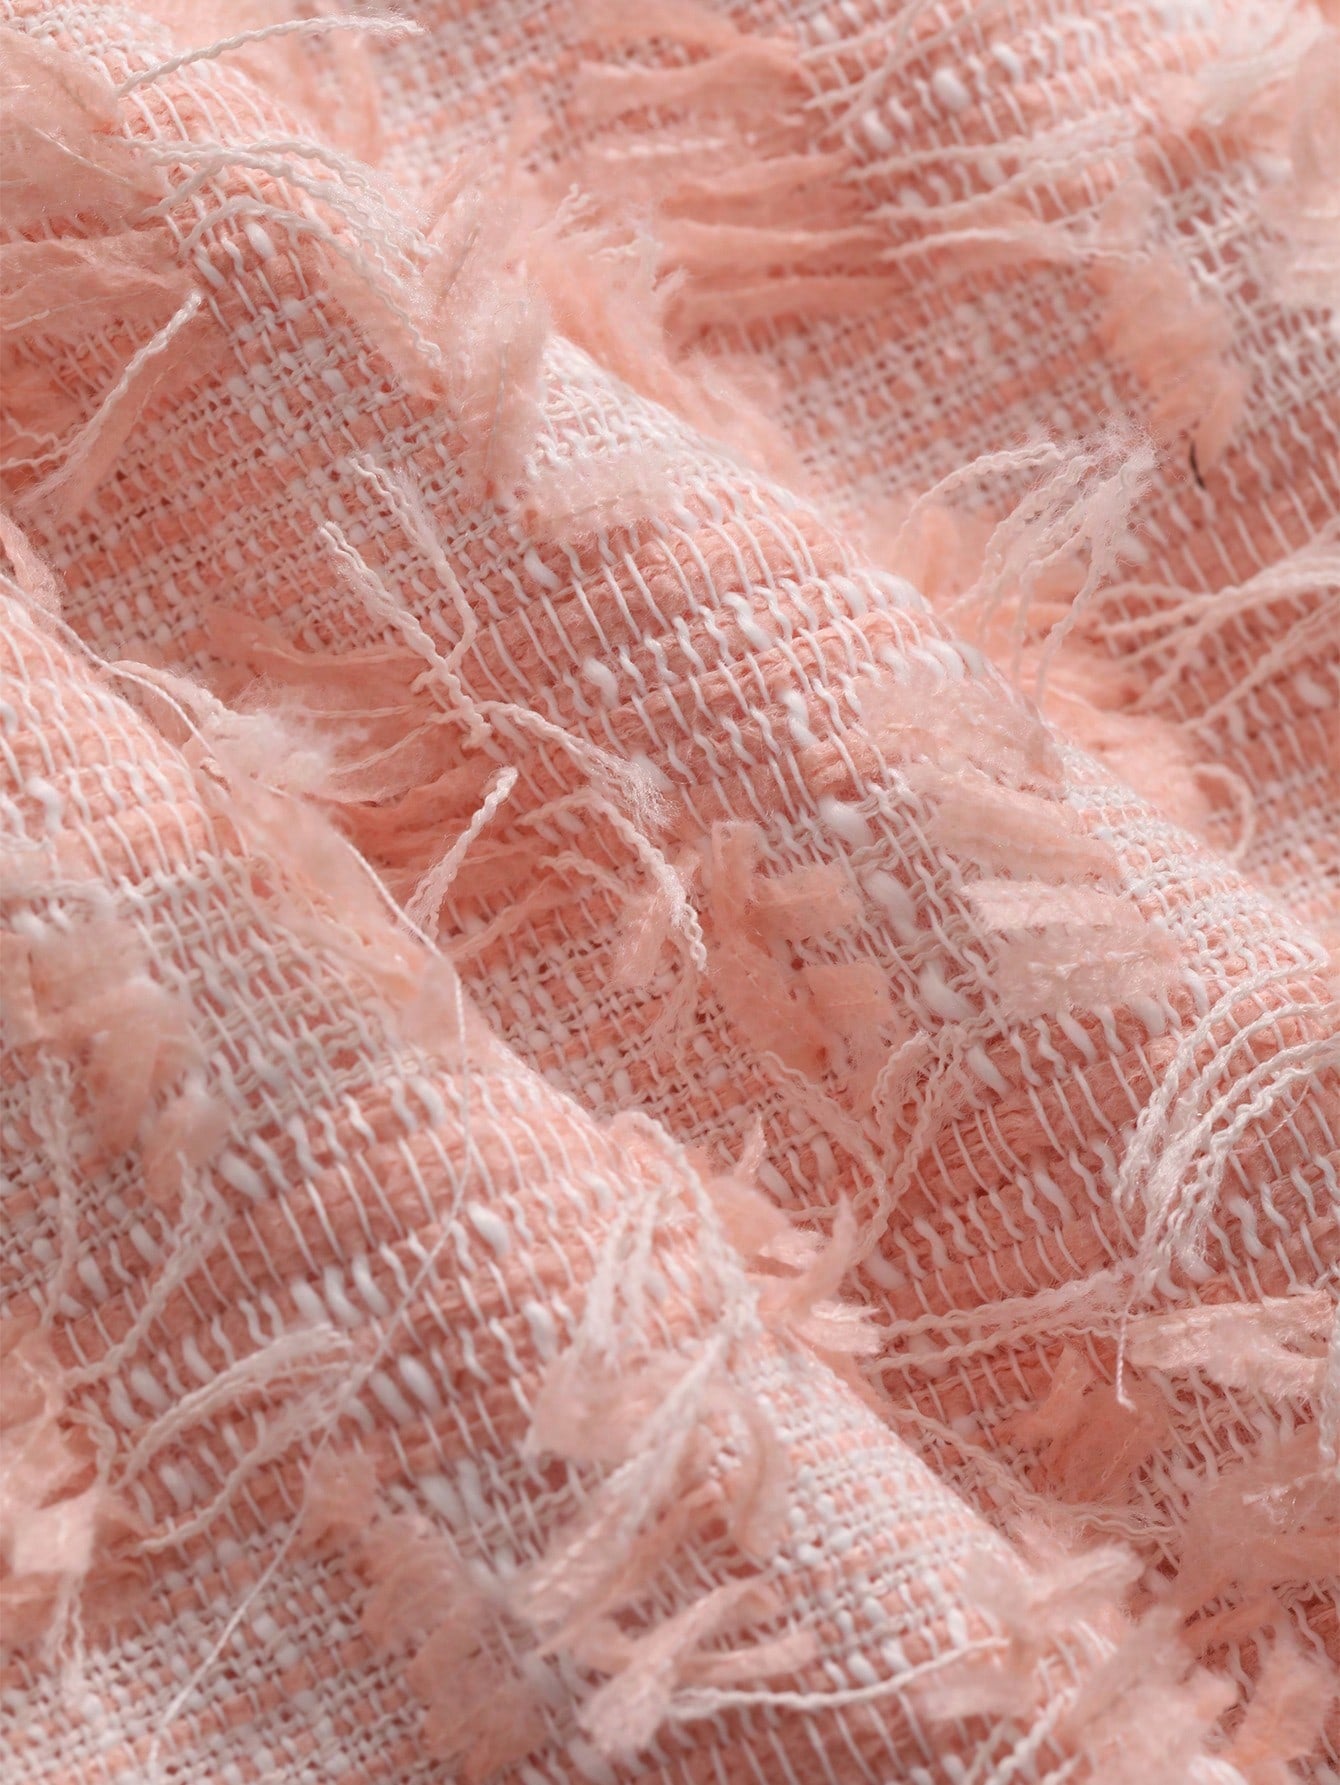 Texture Woolen Blend Short A-Line Skirt